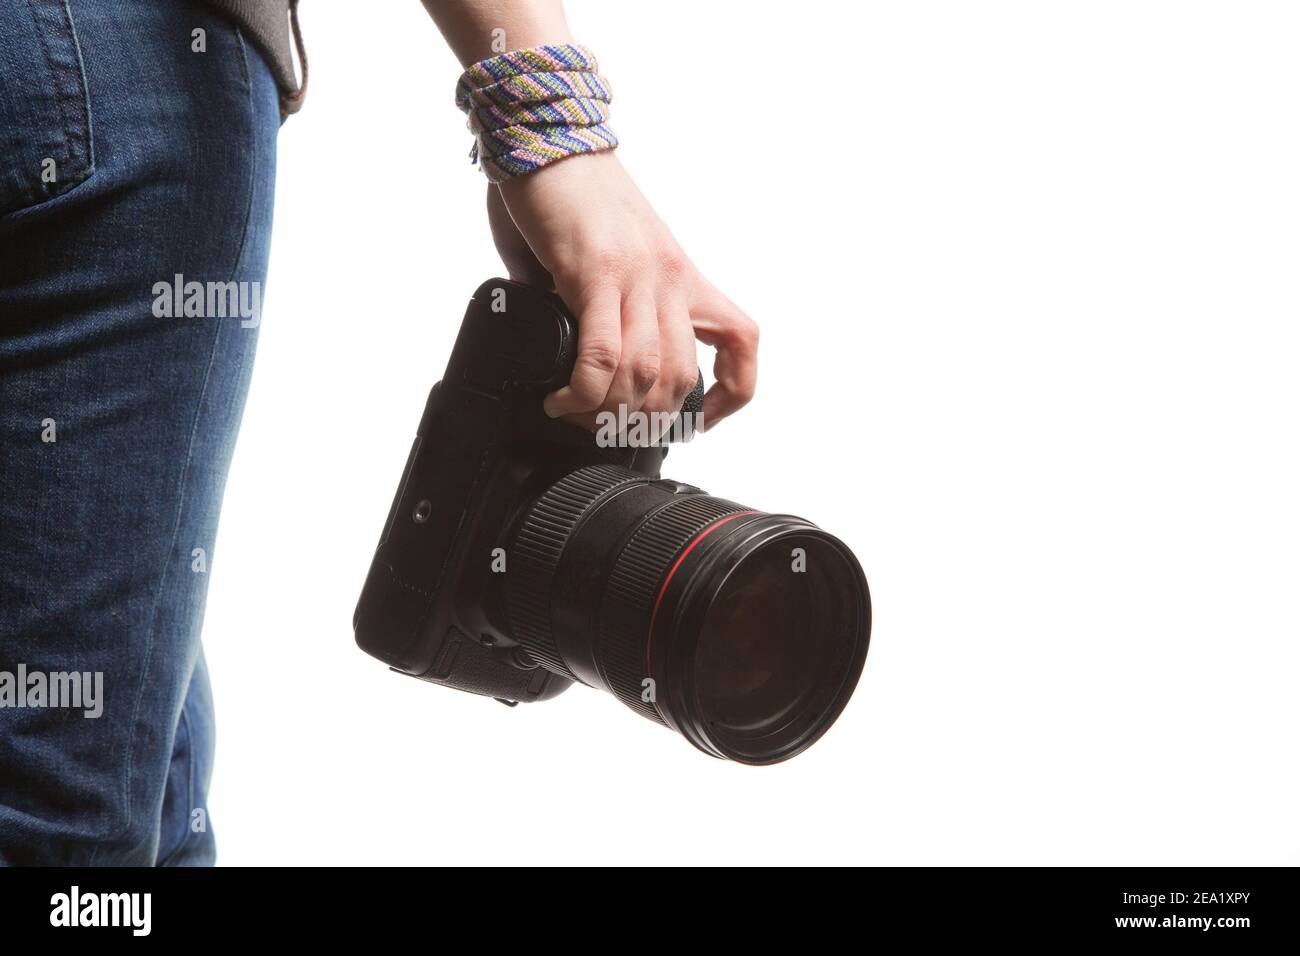 Une femme tient à la main un appareil photo reflex numérique. Isolé sur fond blanc. Vue arrière en studio. Sur le Jean, le sweat-shirt et le bracelet de la fille Banque D'Images